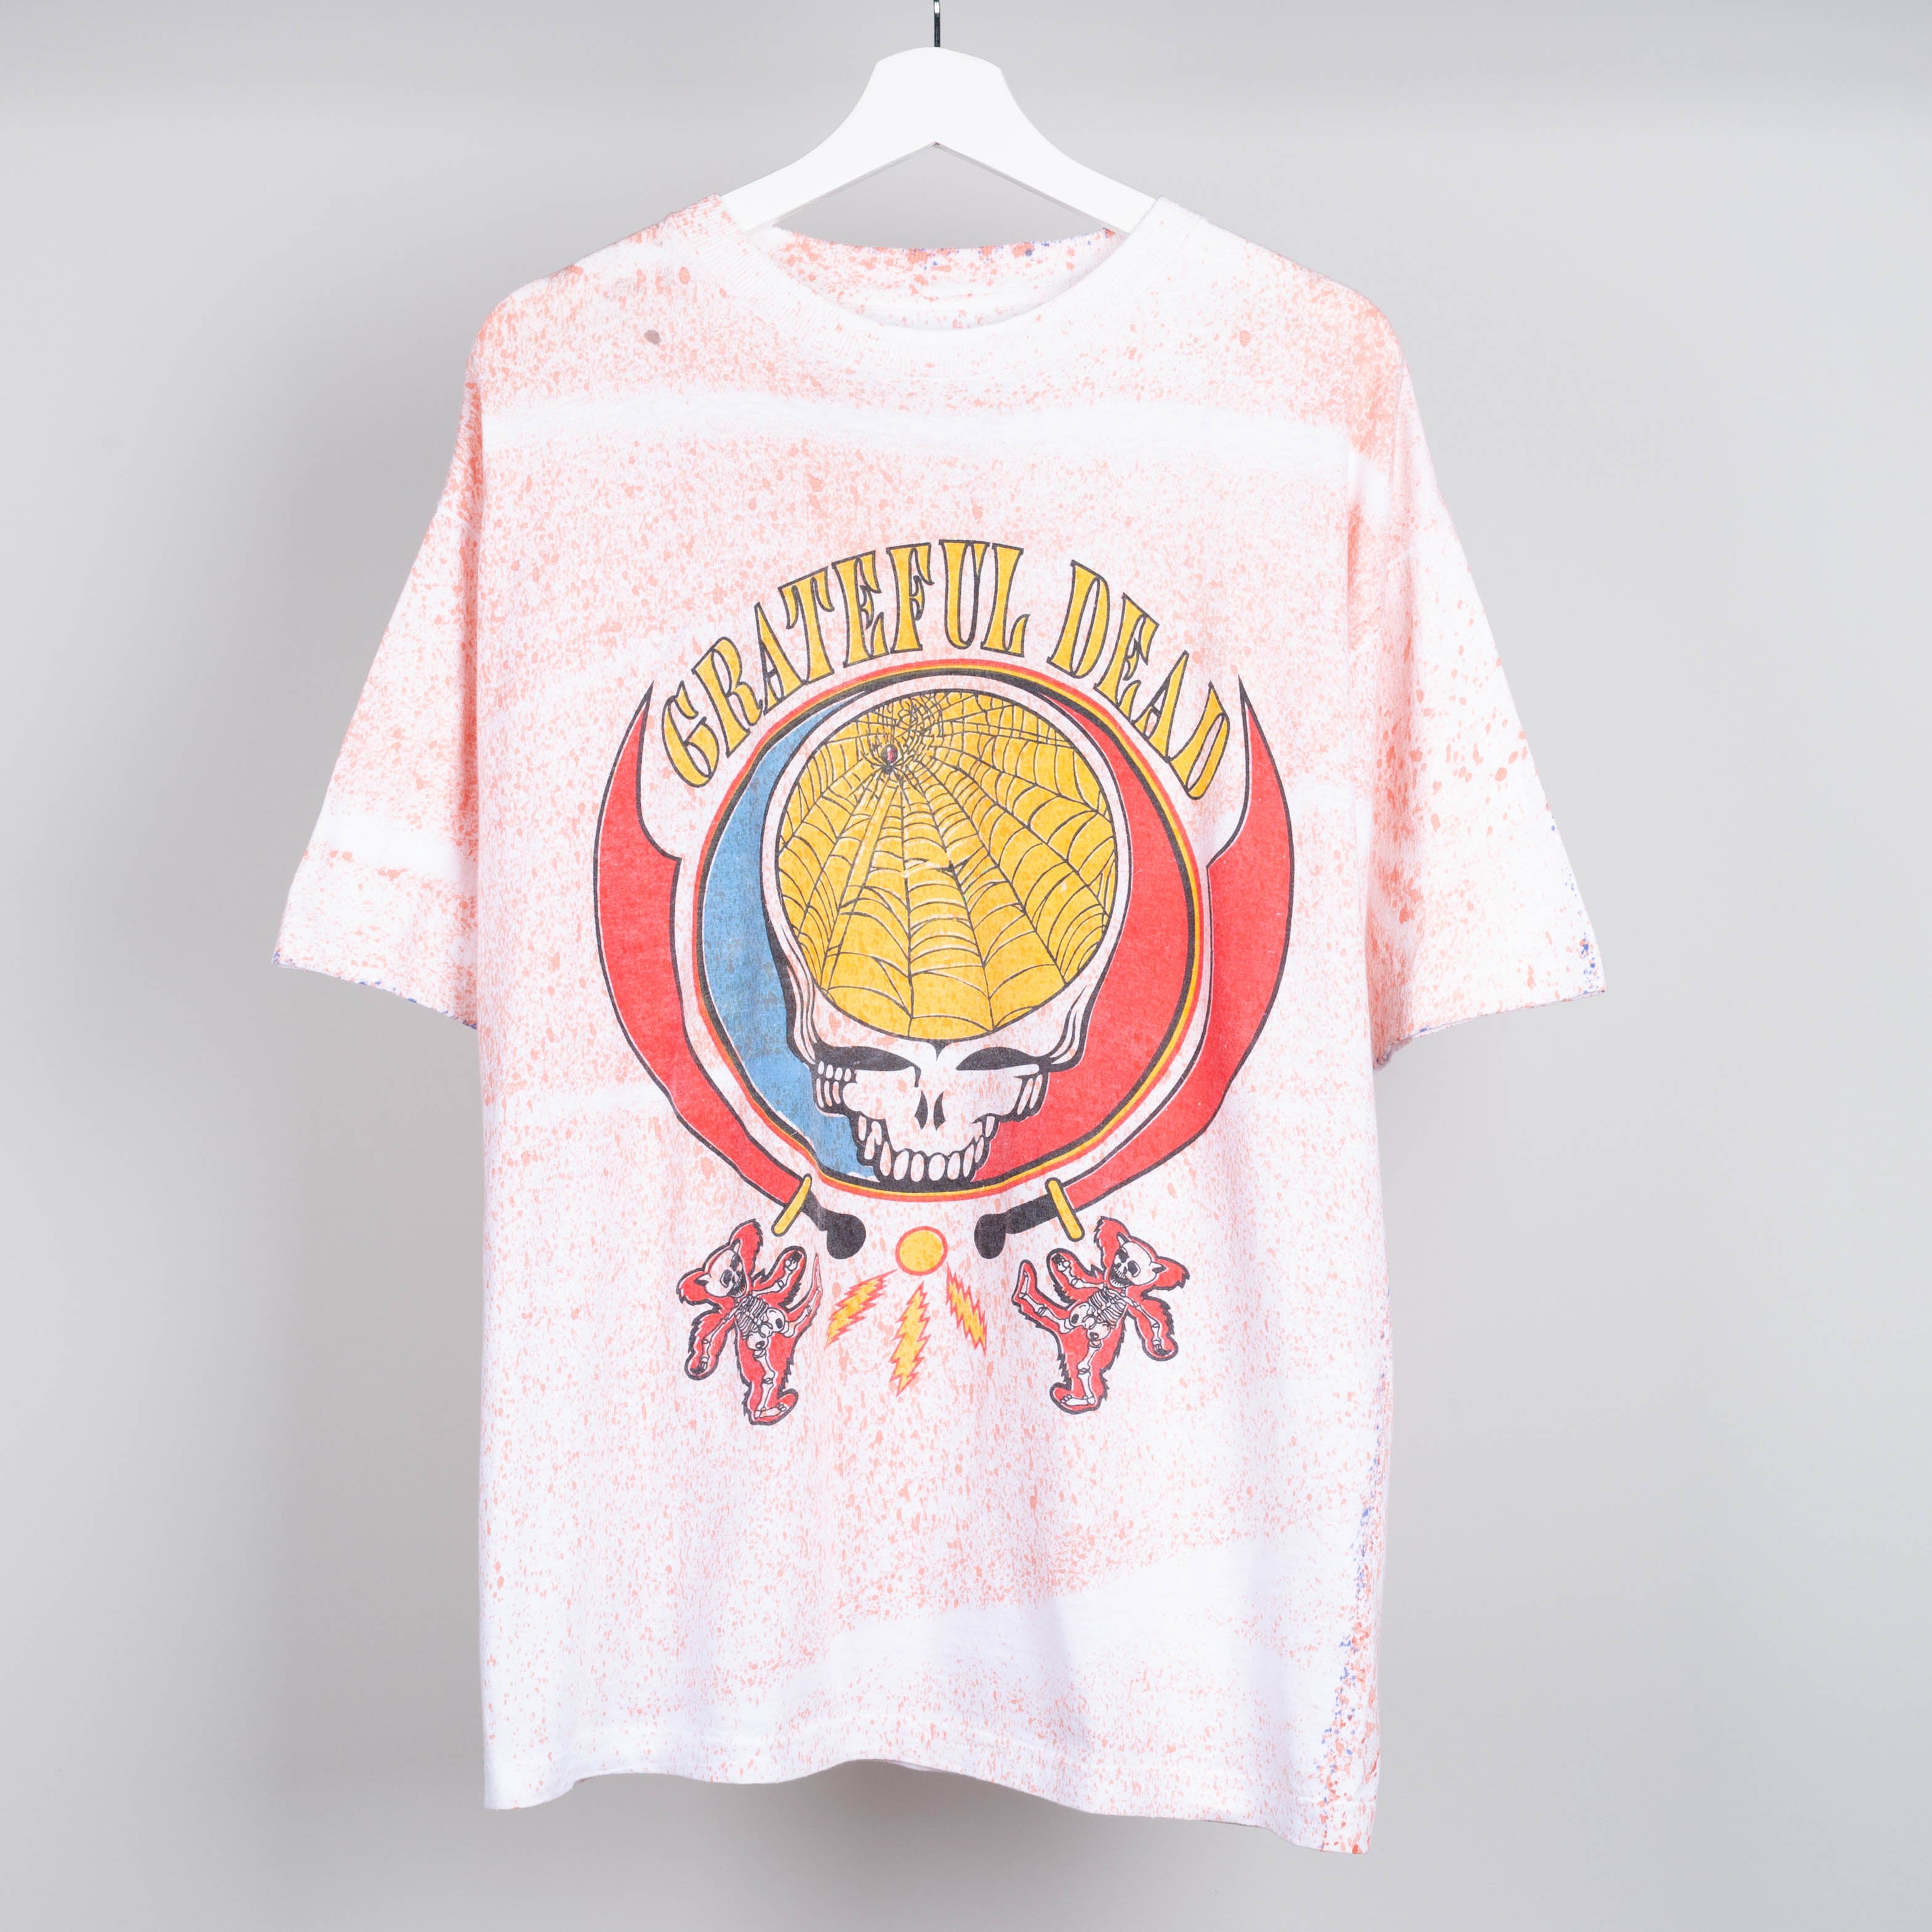 1992 Grateful Dead Tour T-Shirt Size XL